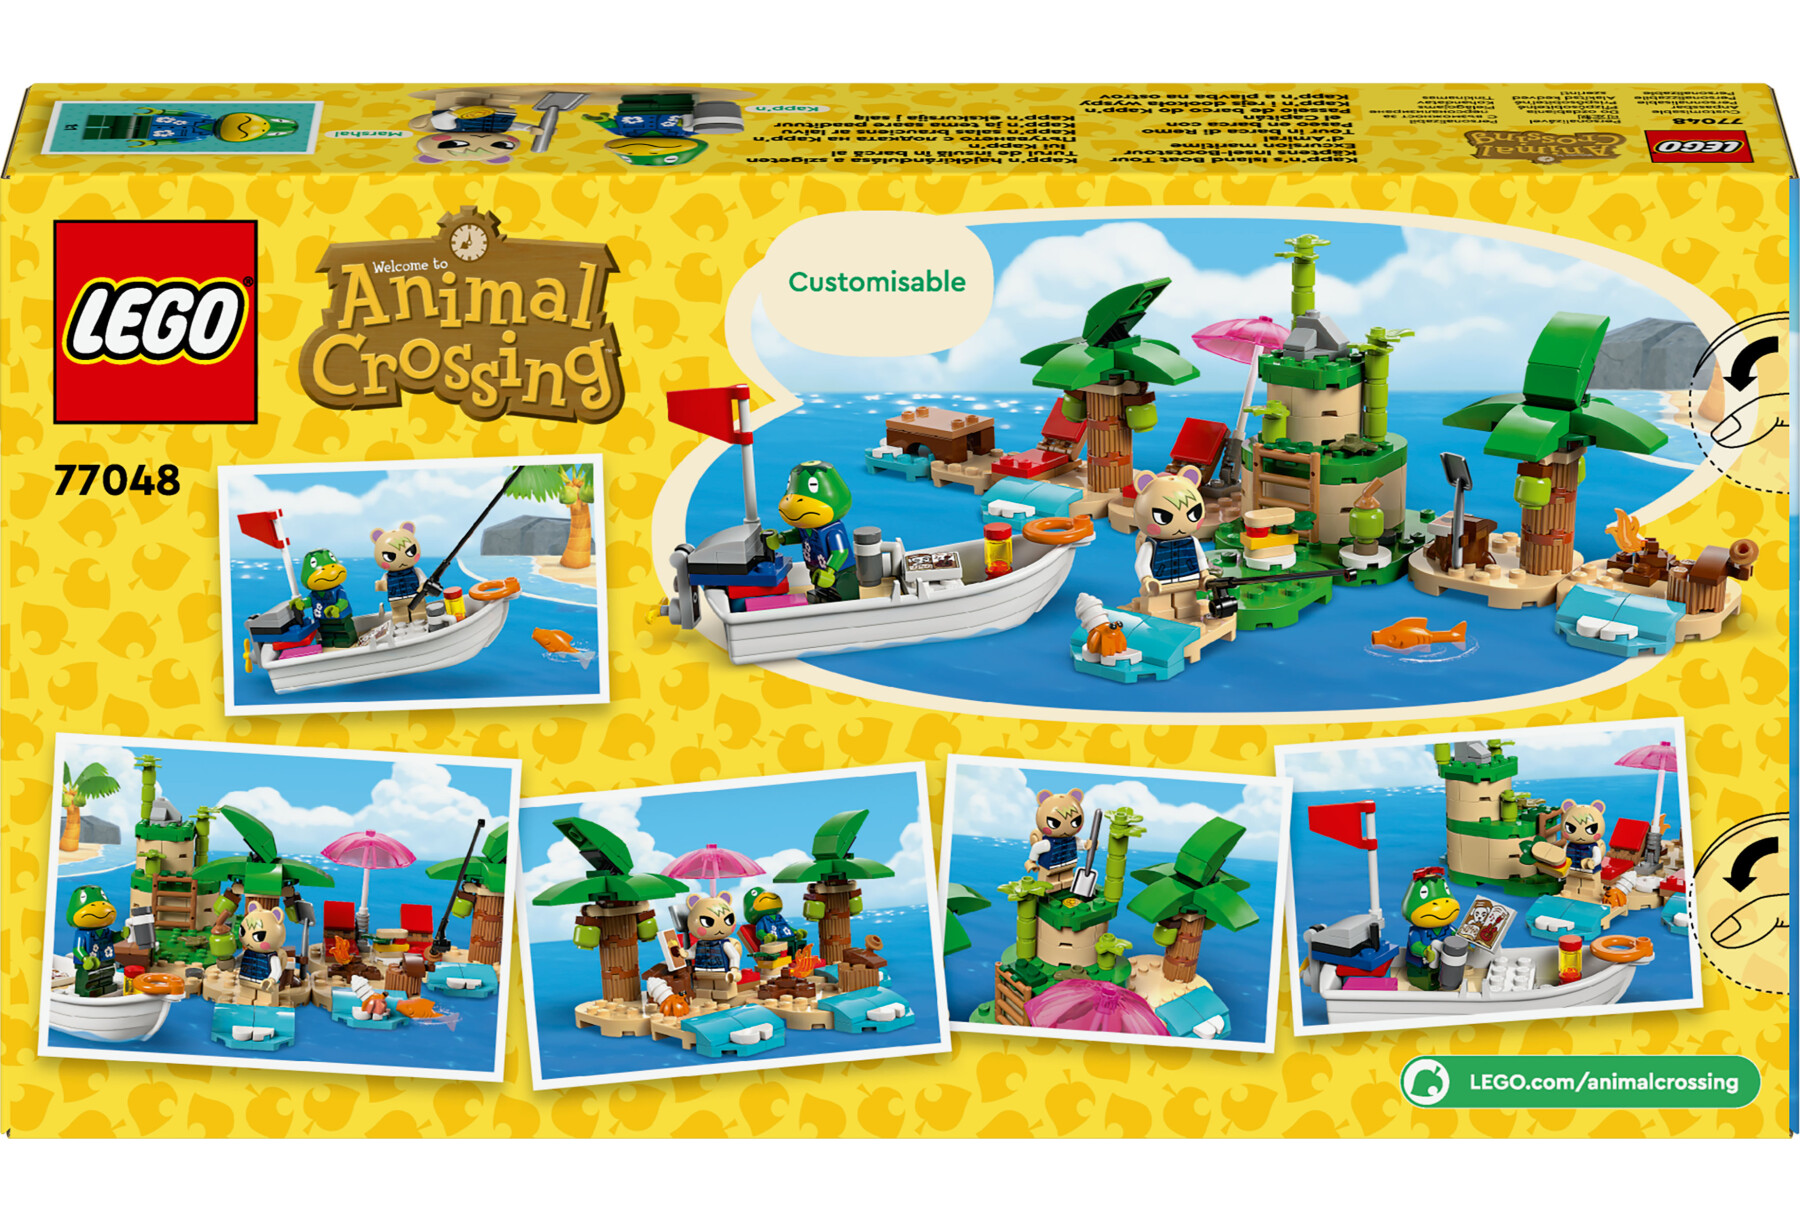 Lego animal crossing 77048 tour in barca di remo, giochi creativi per bambini 6+ con 2 personaggi della serie di videogiochi - Lego Animal Crossing